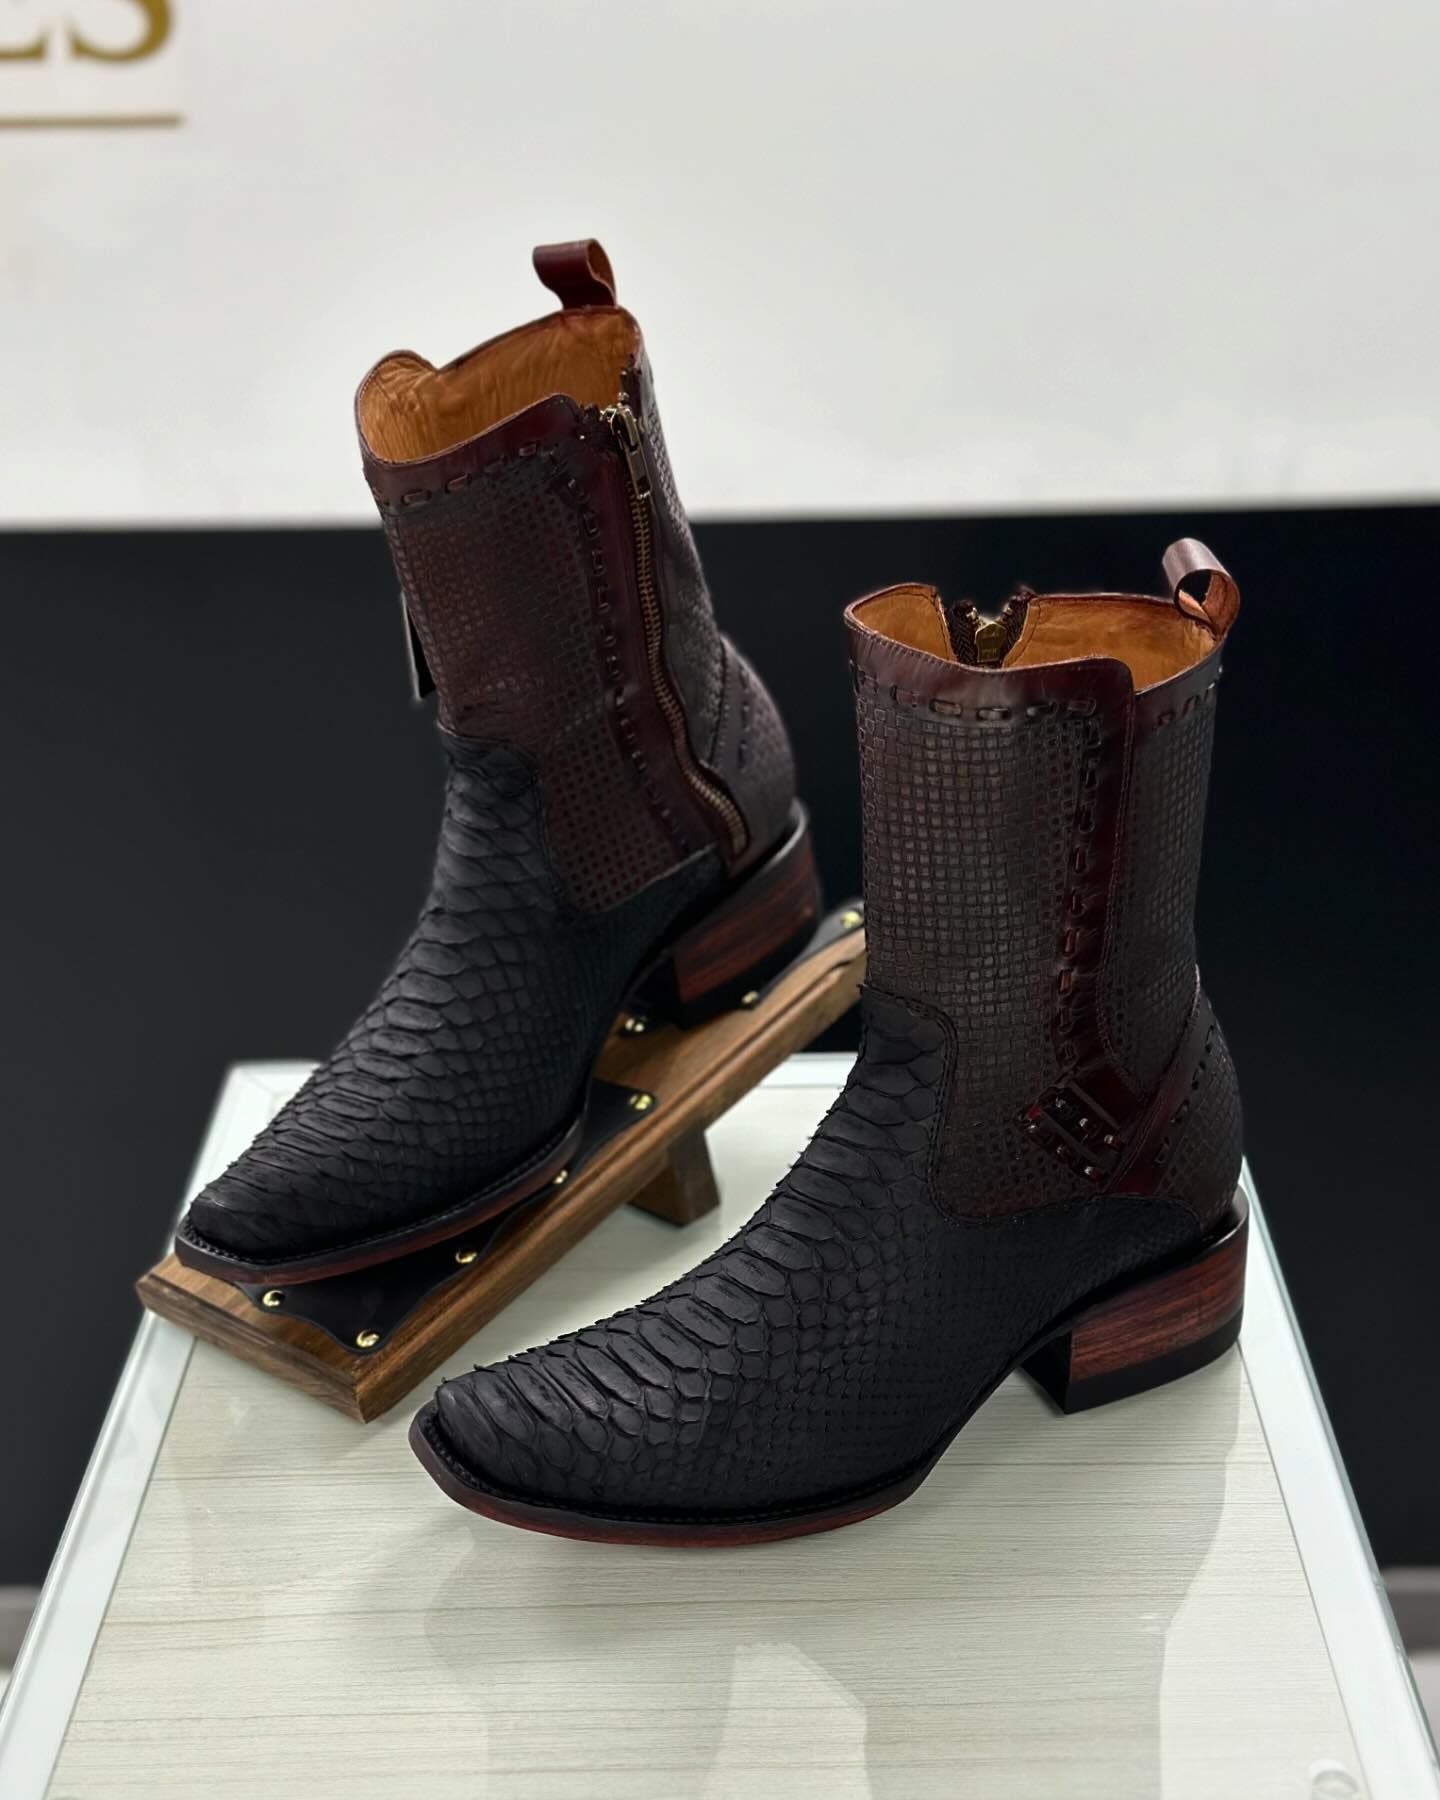 Men‘s Python Viper Skin Gala Design Boots